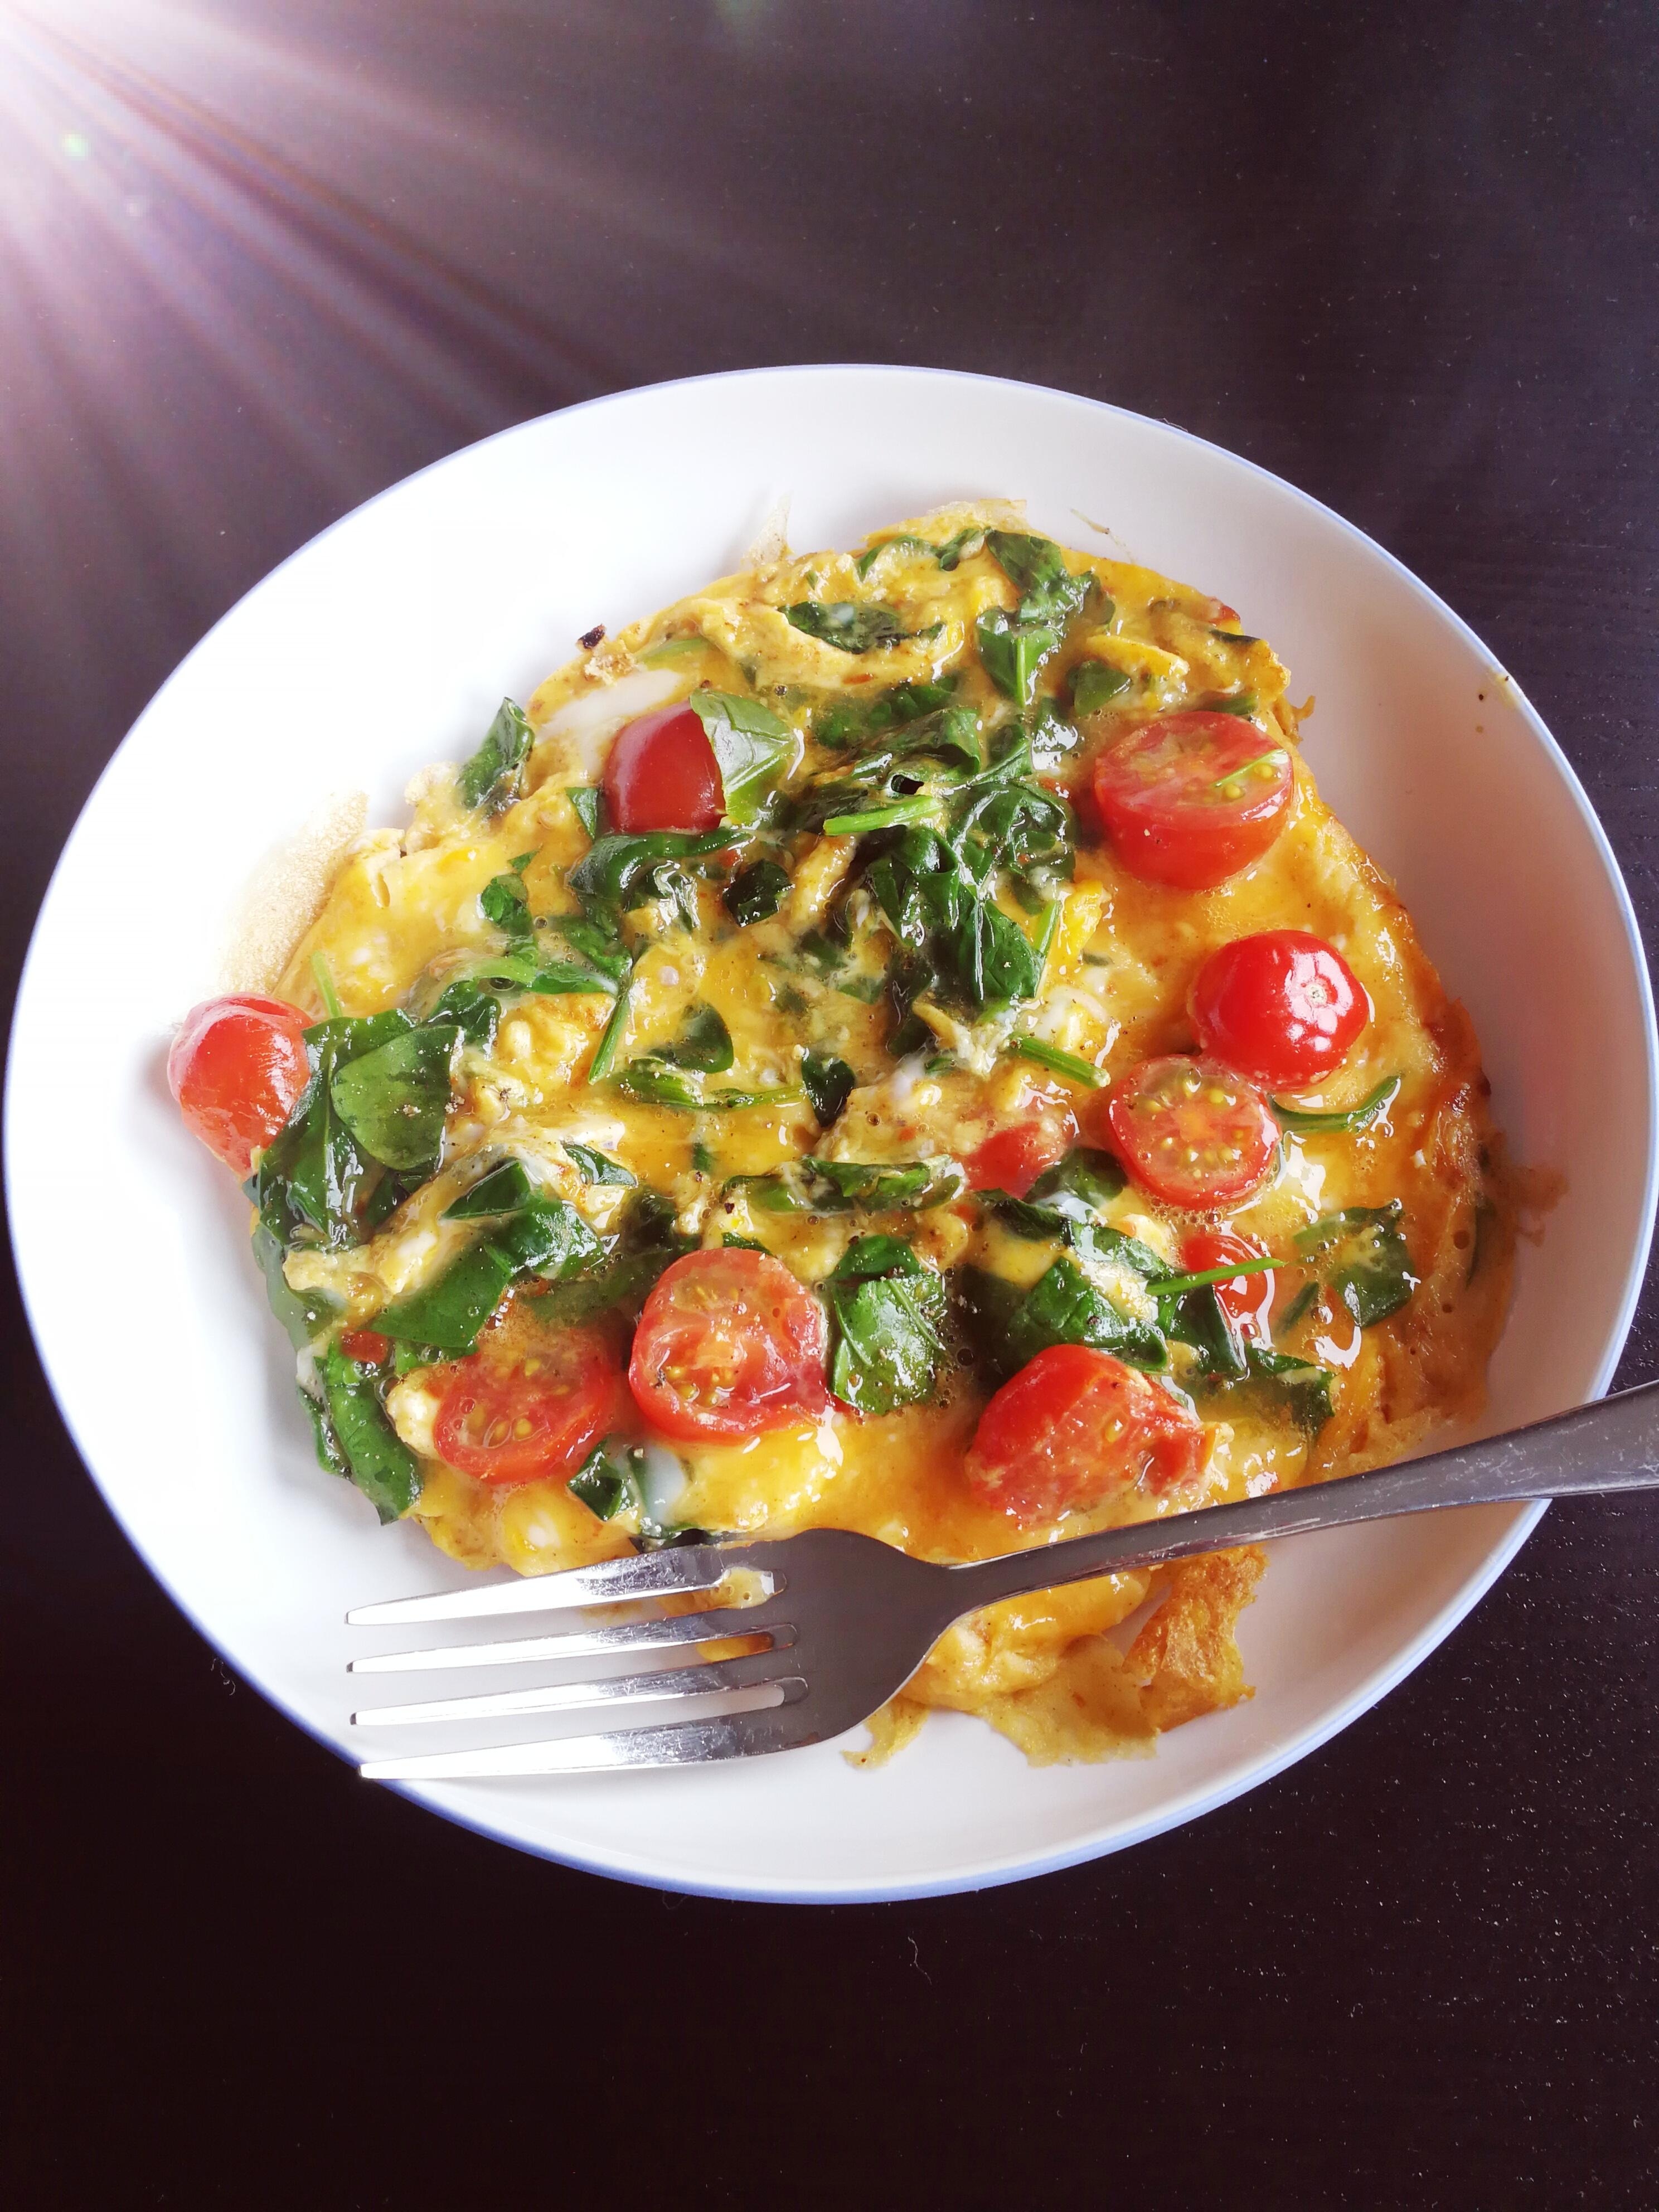 Good Morning Baby💕
#Frühstück #Omelett #Babyspinat 